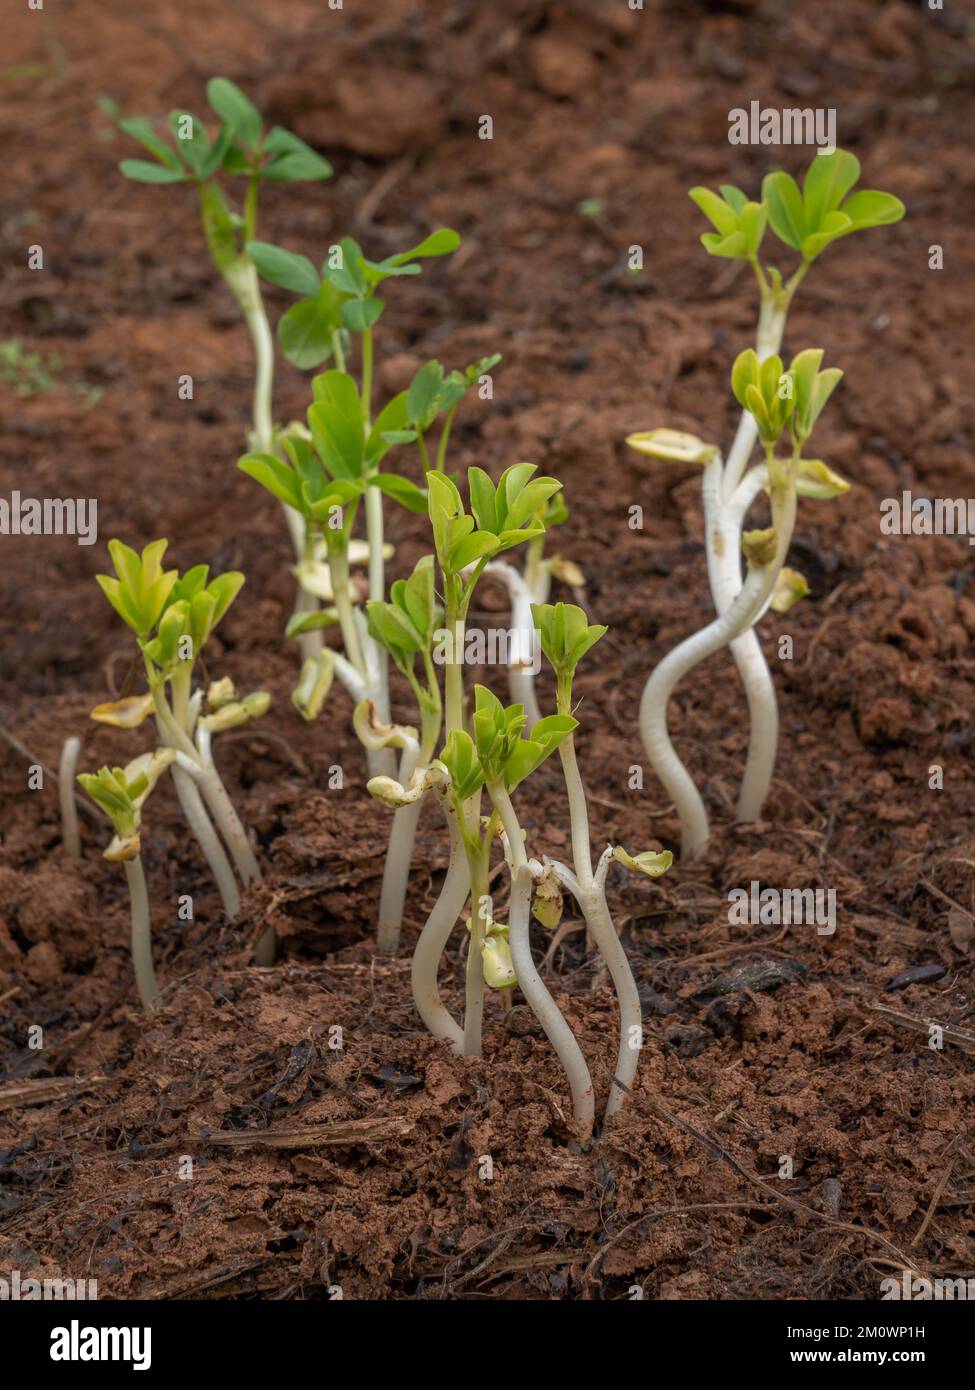 Gros plan de jeunes pousses d'arachide fraîches, alias arachis hypogaea, qui poussent au champ après la récolte Banque D'Images